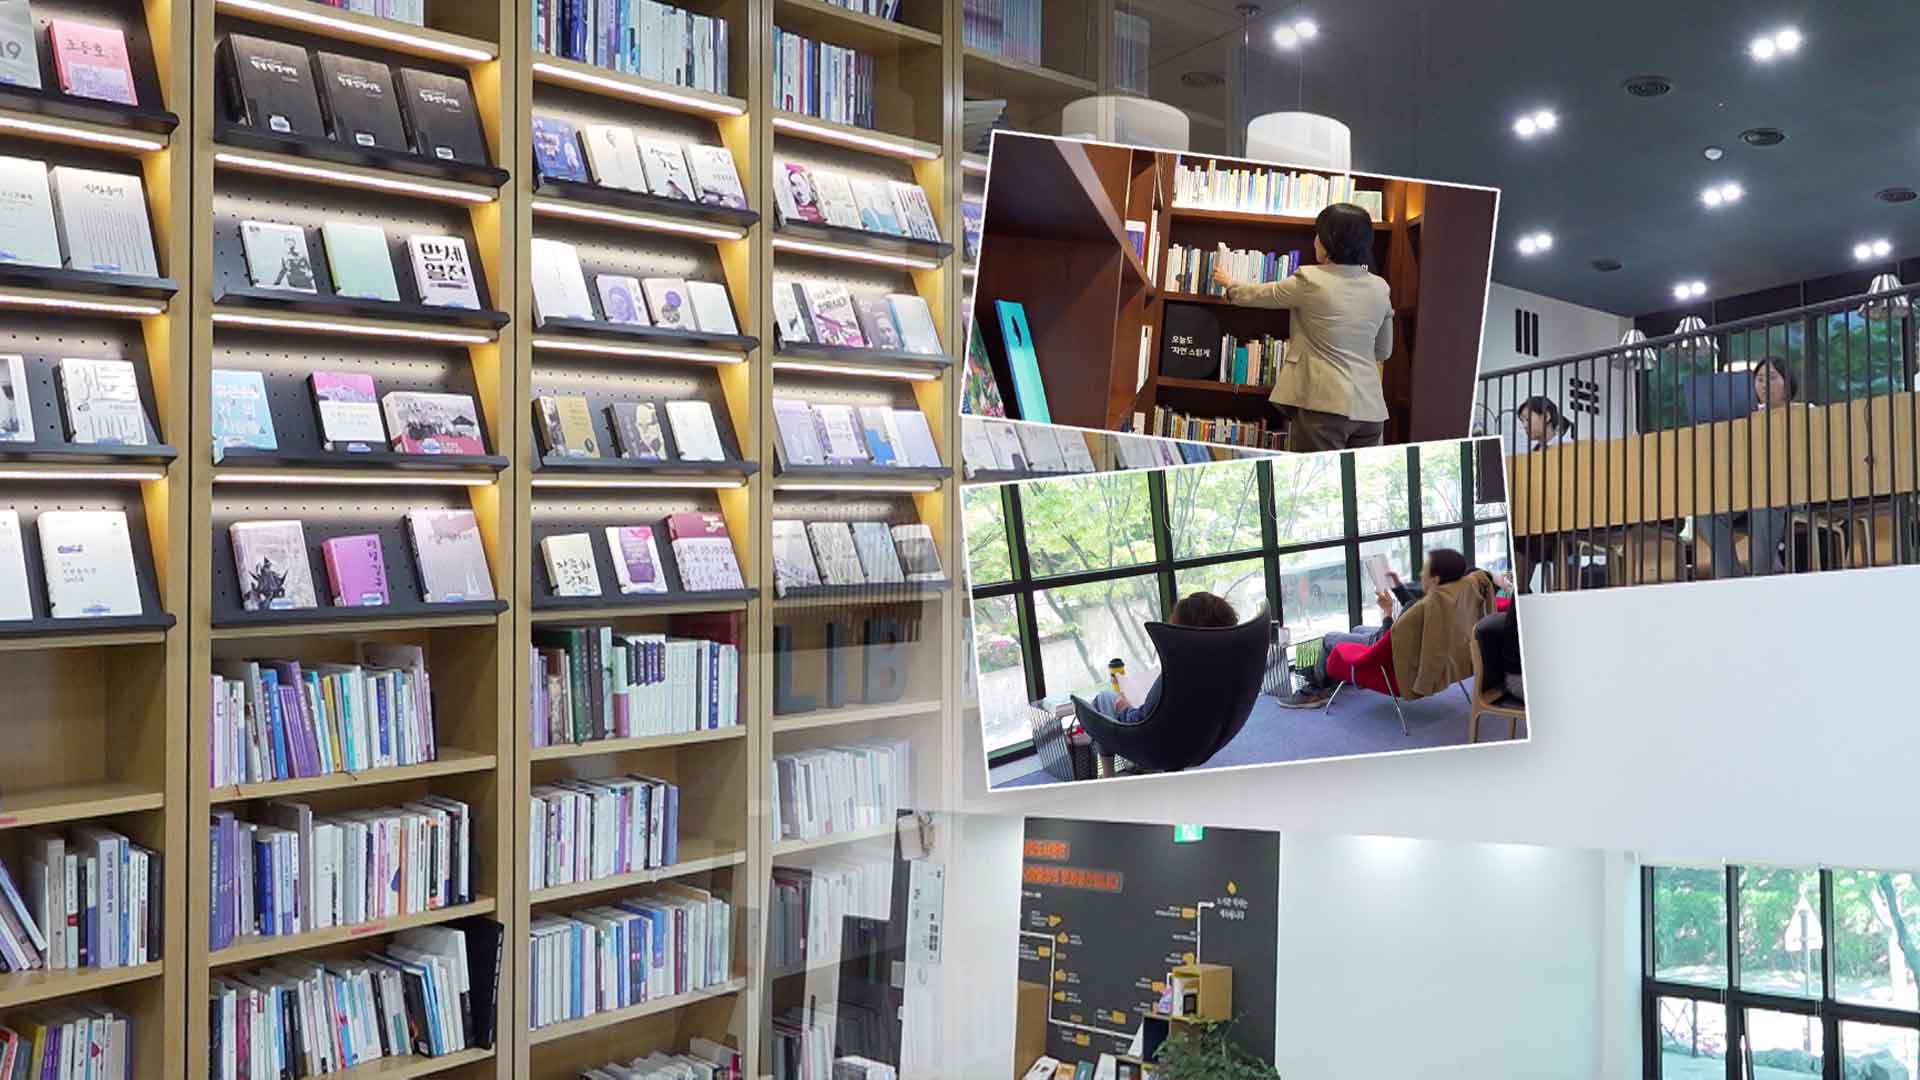 '10명 중 6명은 책 안 읽는다'.. 도서관, 문화 공간 재편으로 돌파?